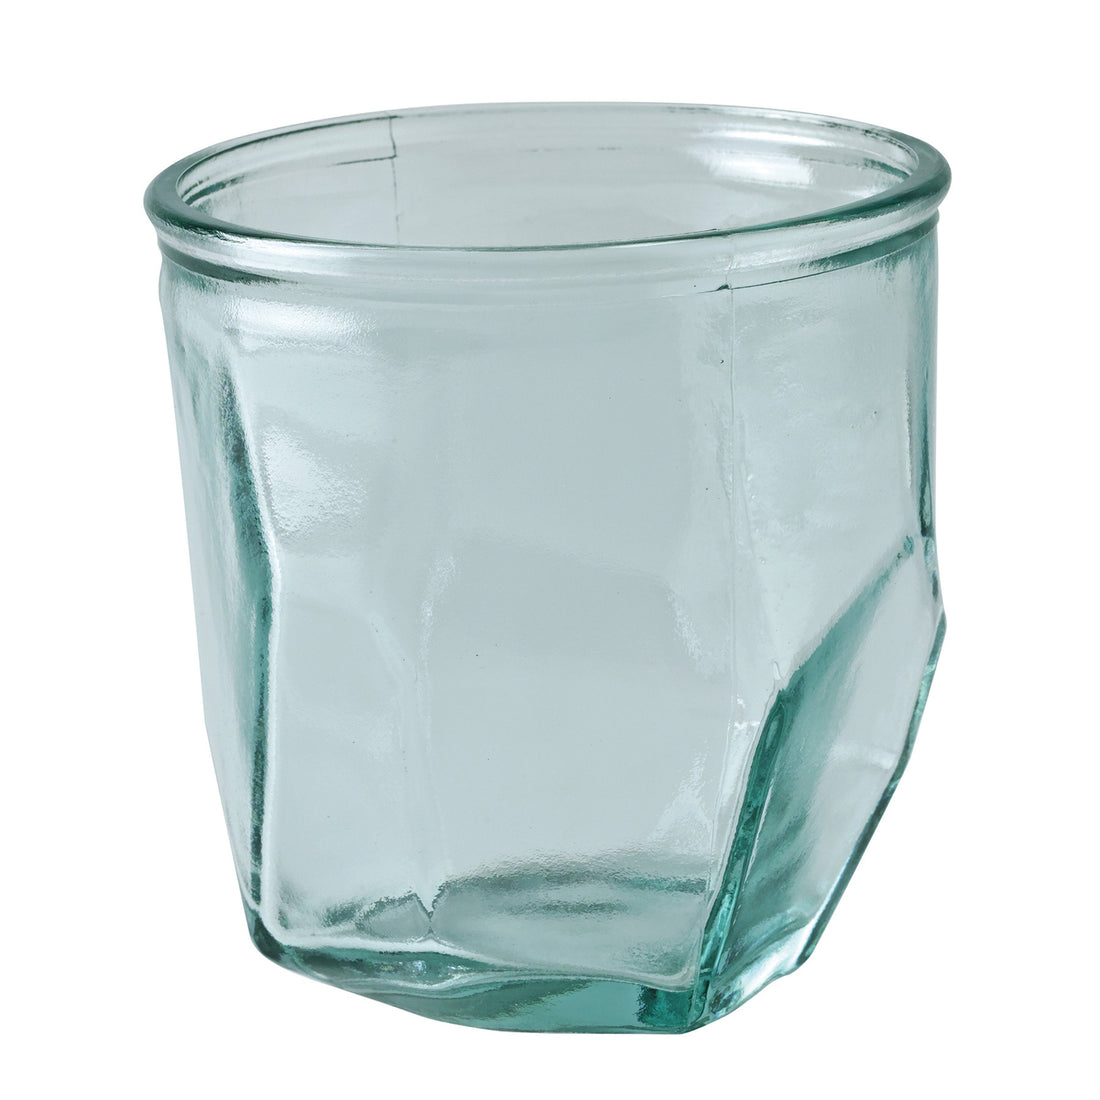 VALENCIA ORIGAMI GLASS VASE